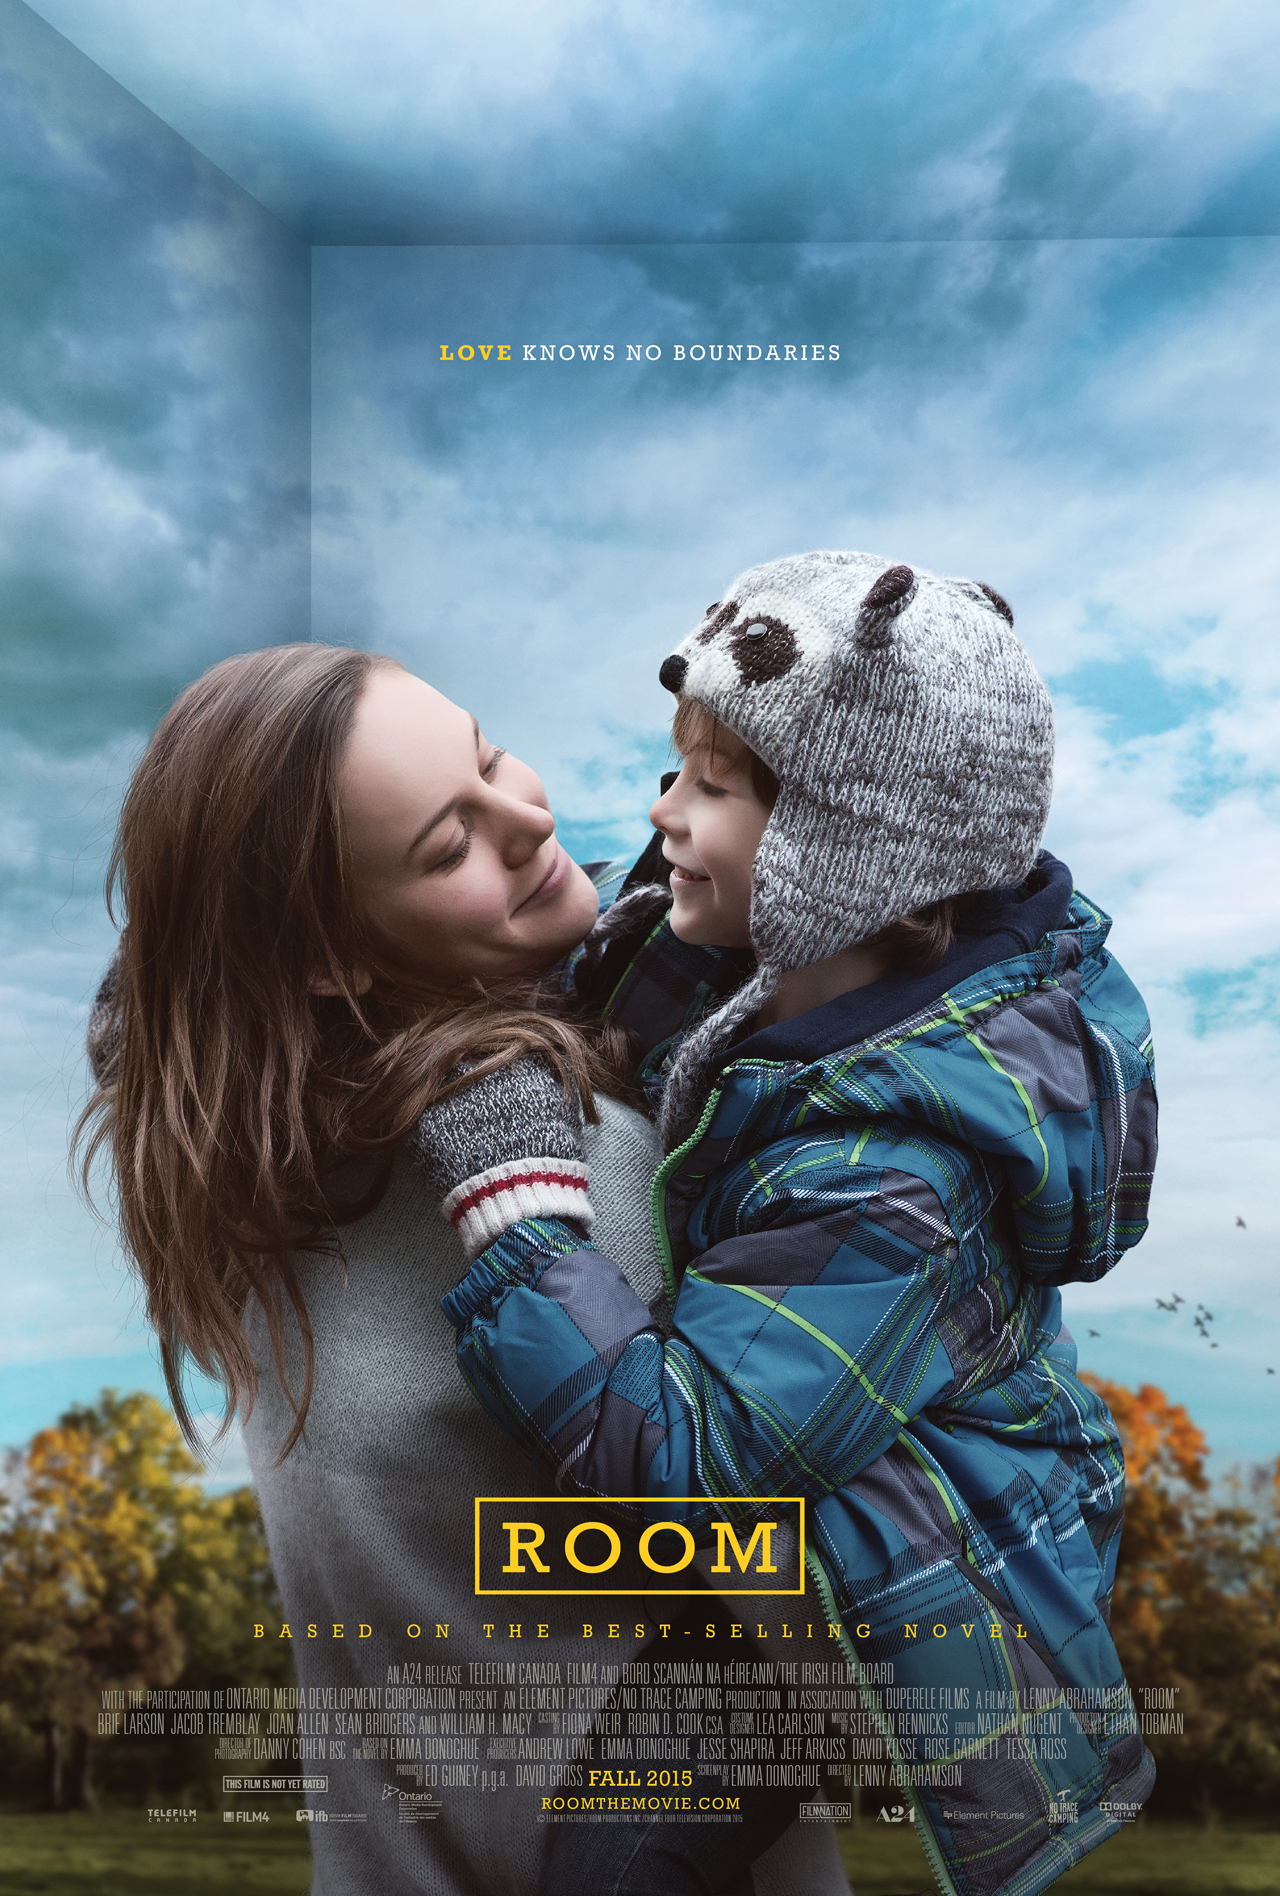 Room, una fiaba nera e commovente con Brie Larson, miglior attrice protagonista agli Oscar 2016